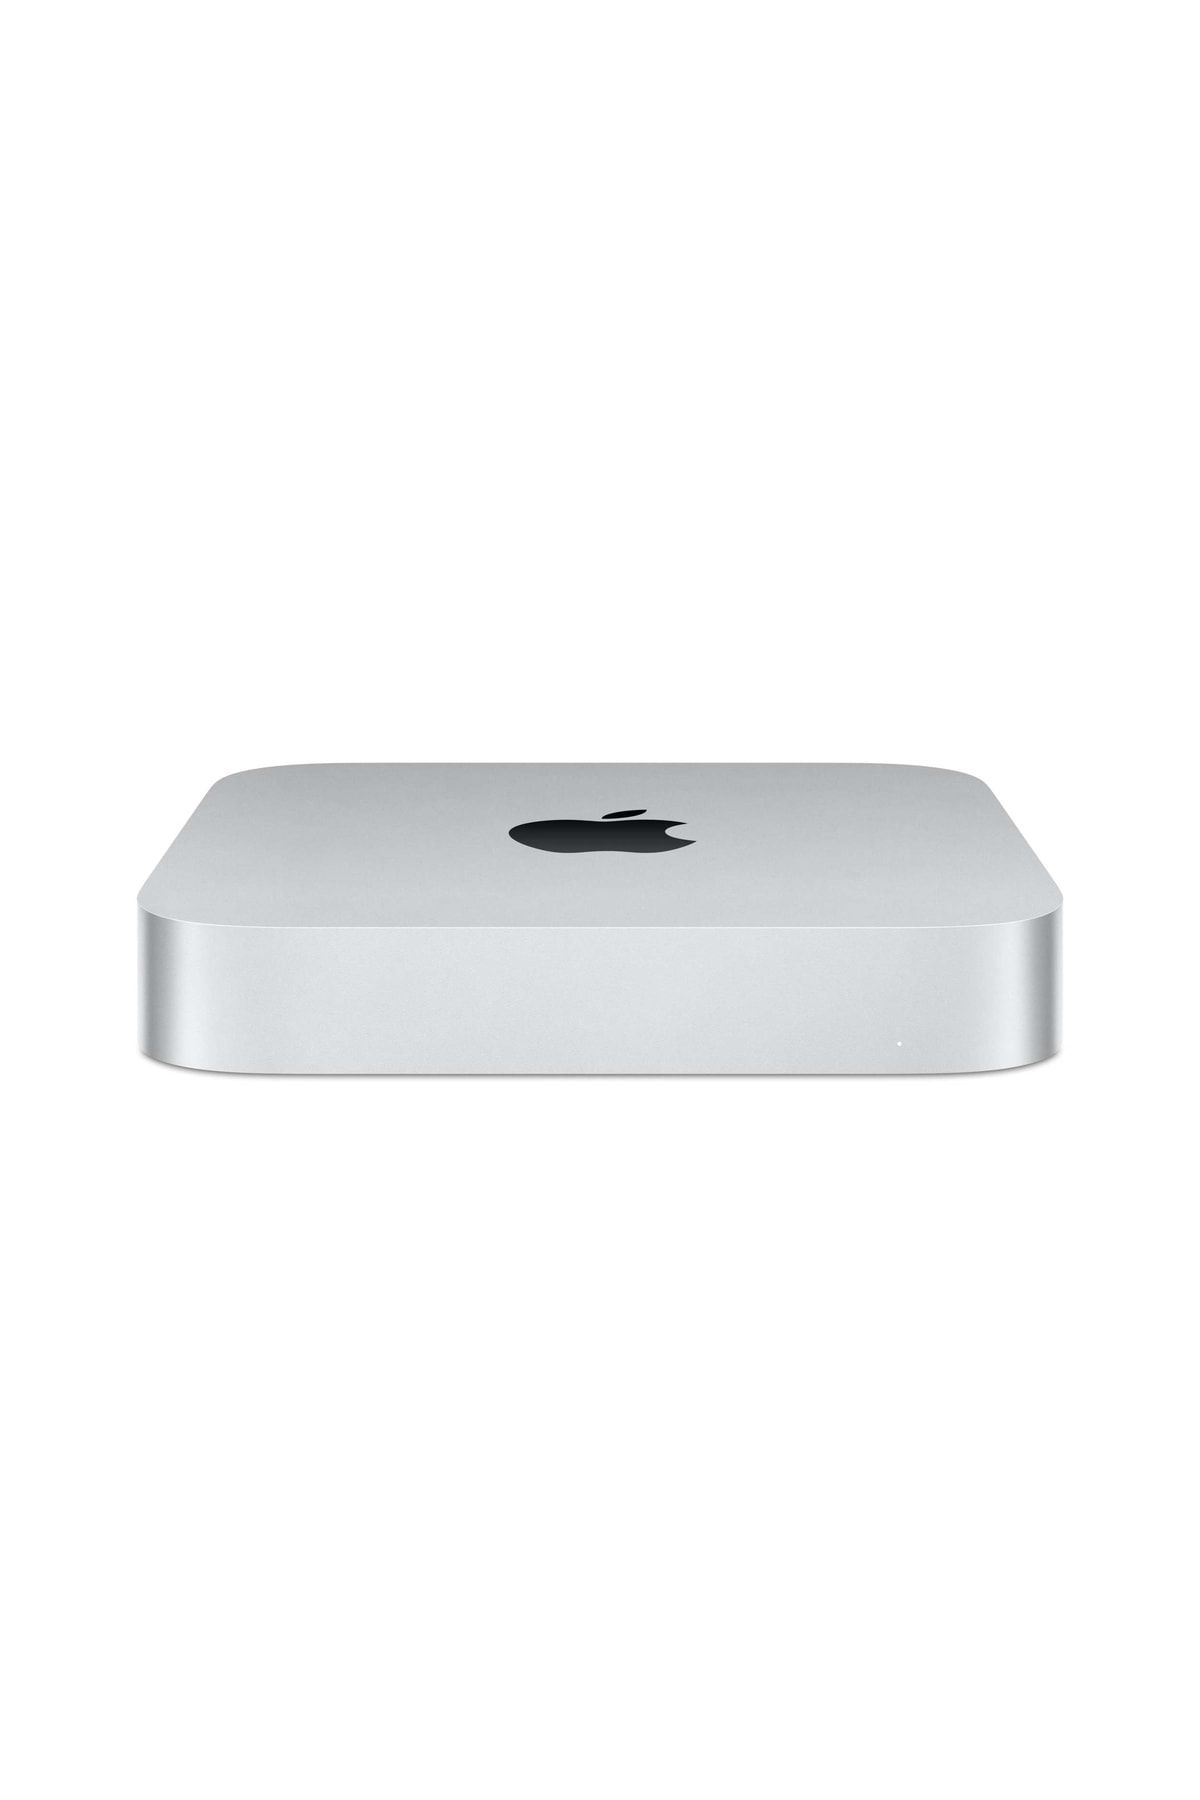 Apple Mac Mini M2 10 Core Gpu 16 Gb 512 Gb Ssd Hd